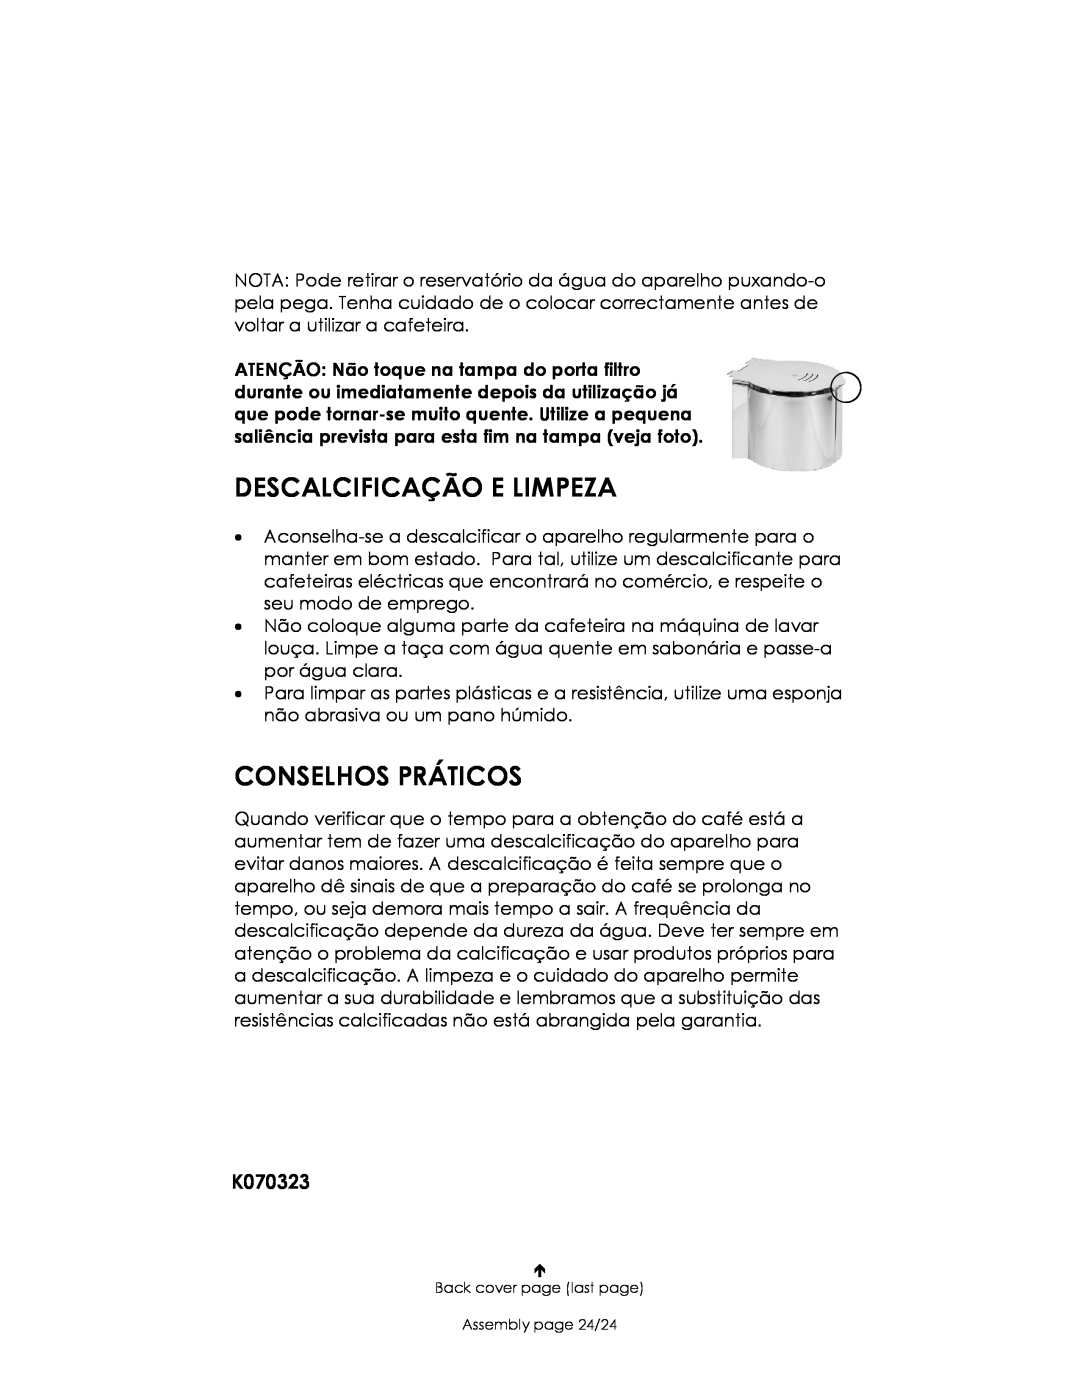 Kalorik USK CM 4 manual Descalcificação E Limpeza, Conselhos Práticos, K070323 